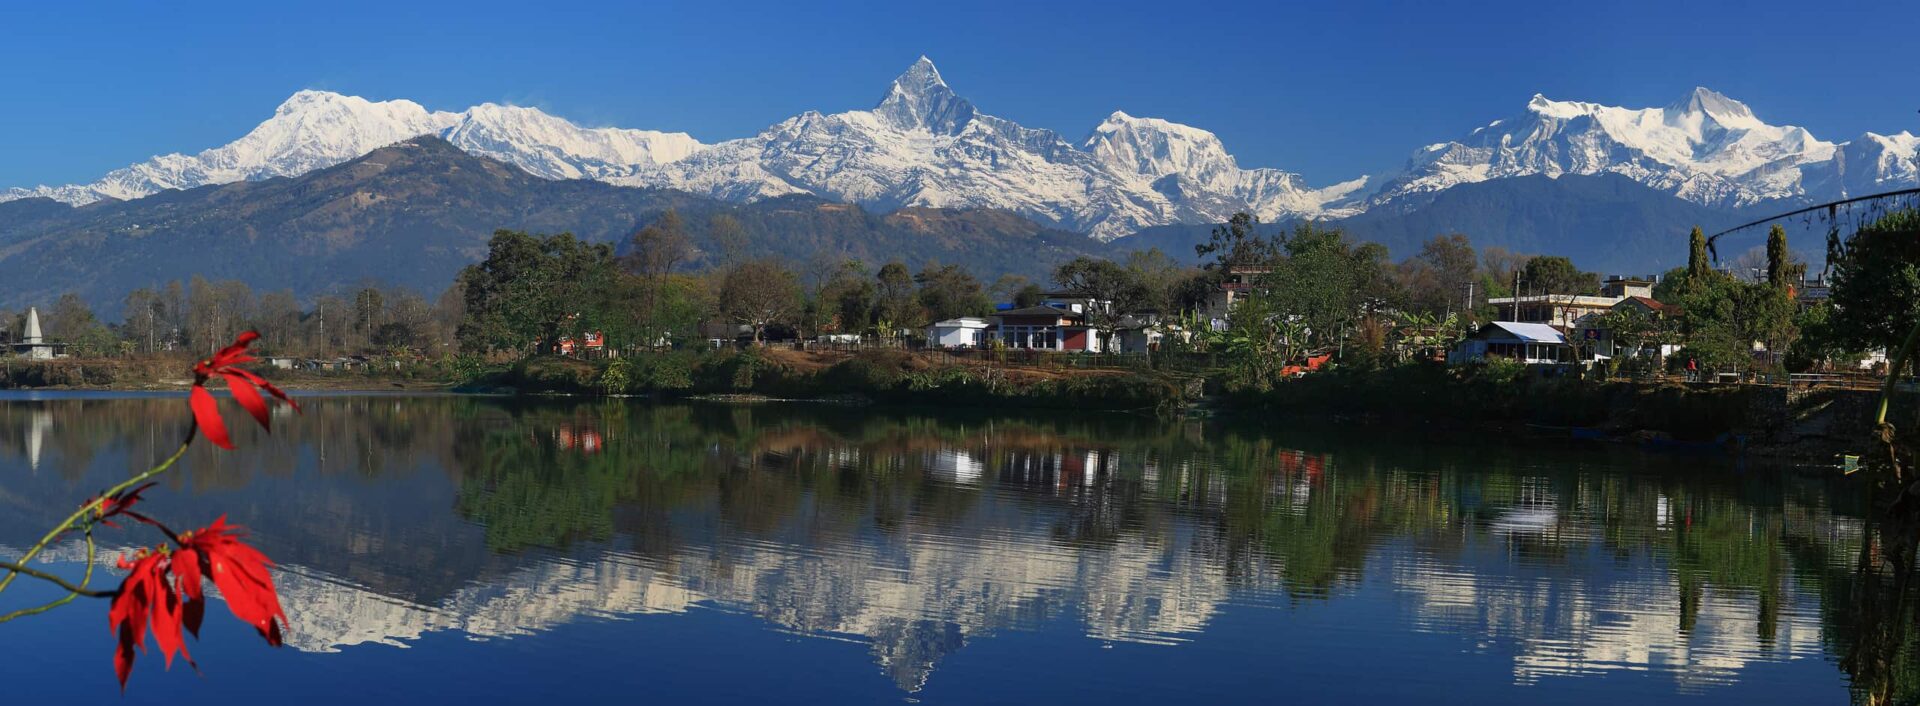 Nepal Pokhara